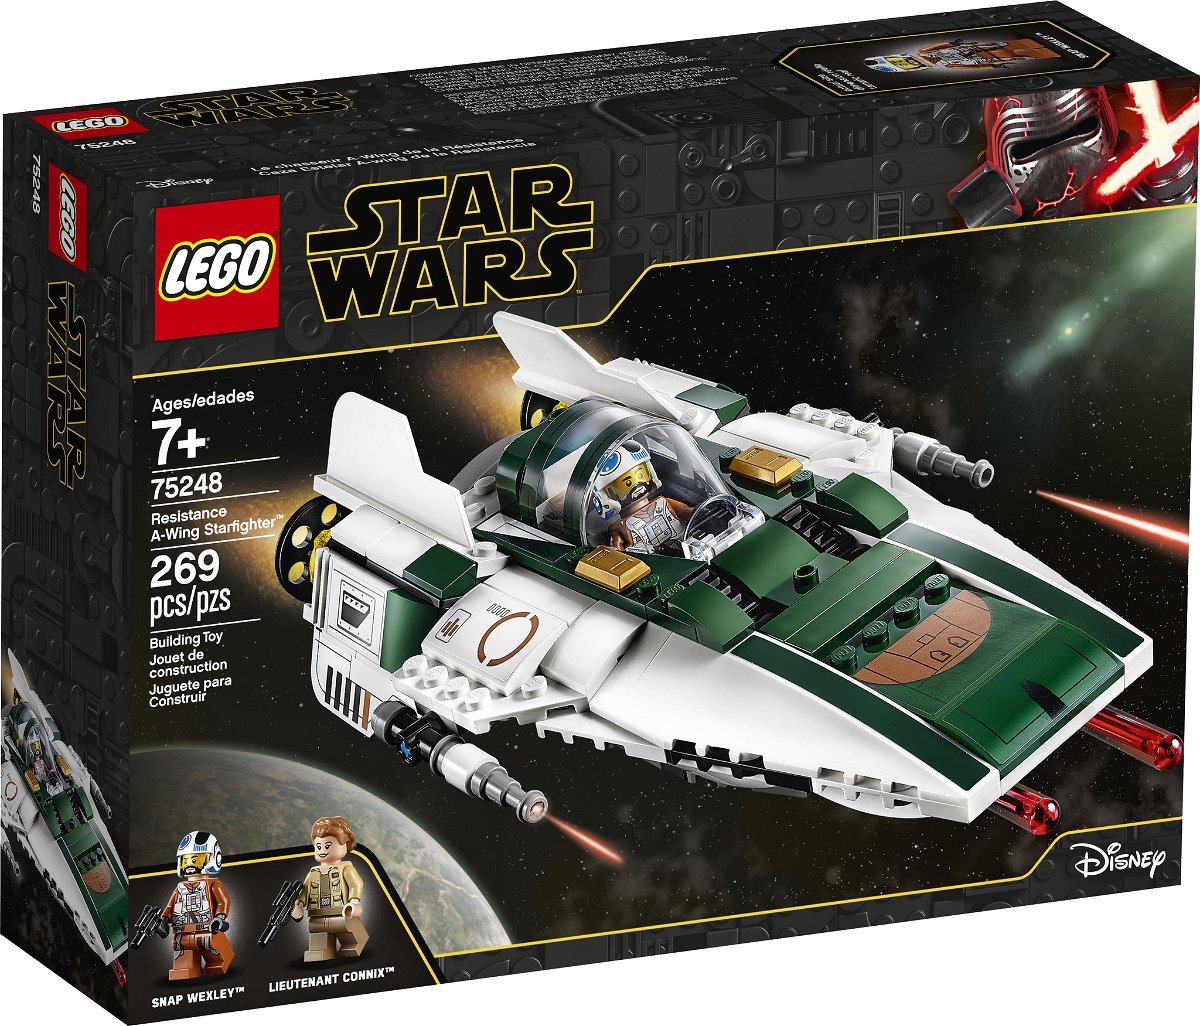 Il box del set LEGO Star Wars 75248 mostra un A-Wing della Resistenza